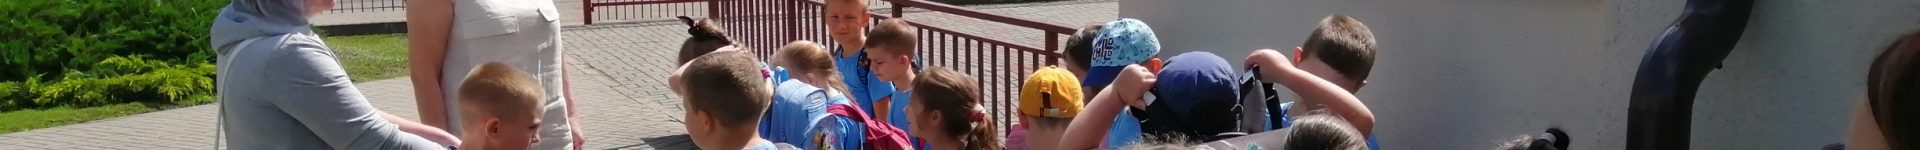 Przedszkole Samorządowe w Jabłonowie Pomorskim z wizytą w Astrobazie